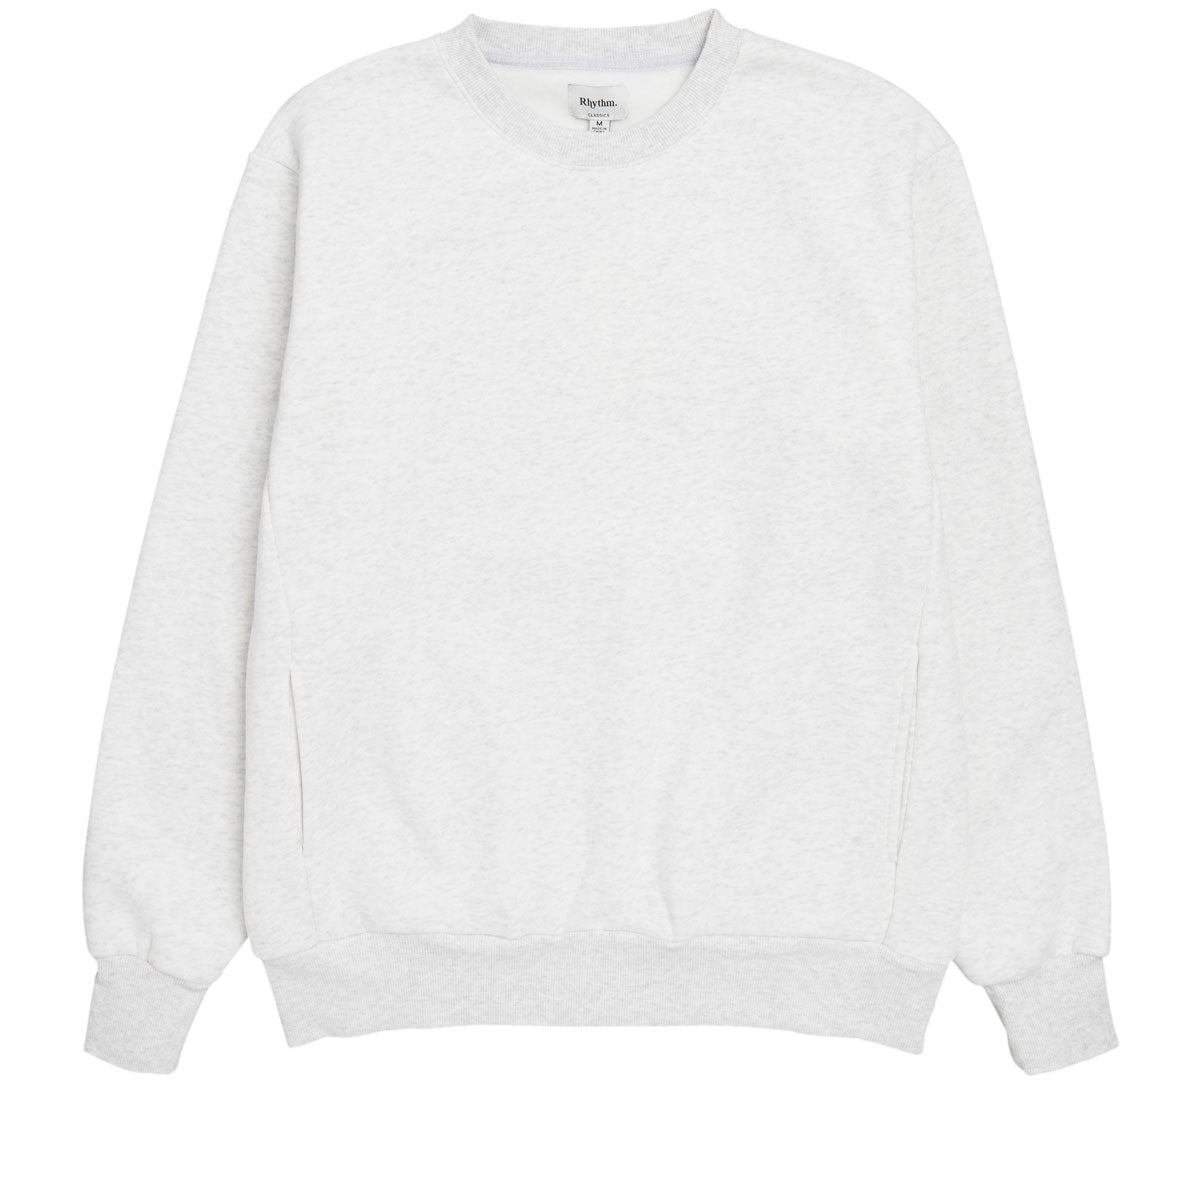 Rhythm Classic Fleece Crew Sweatshirt - Heathered Grey image 1